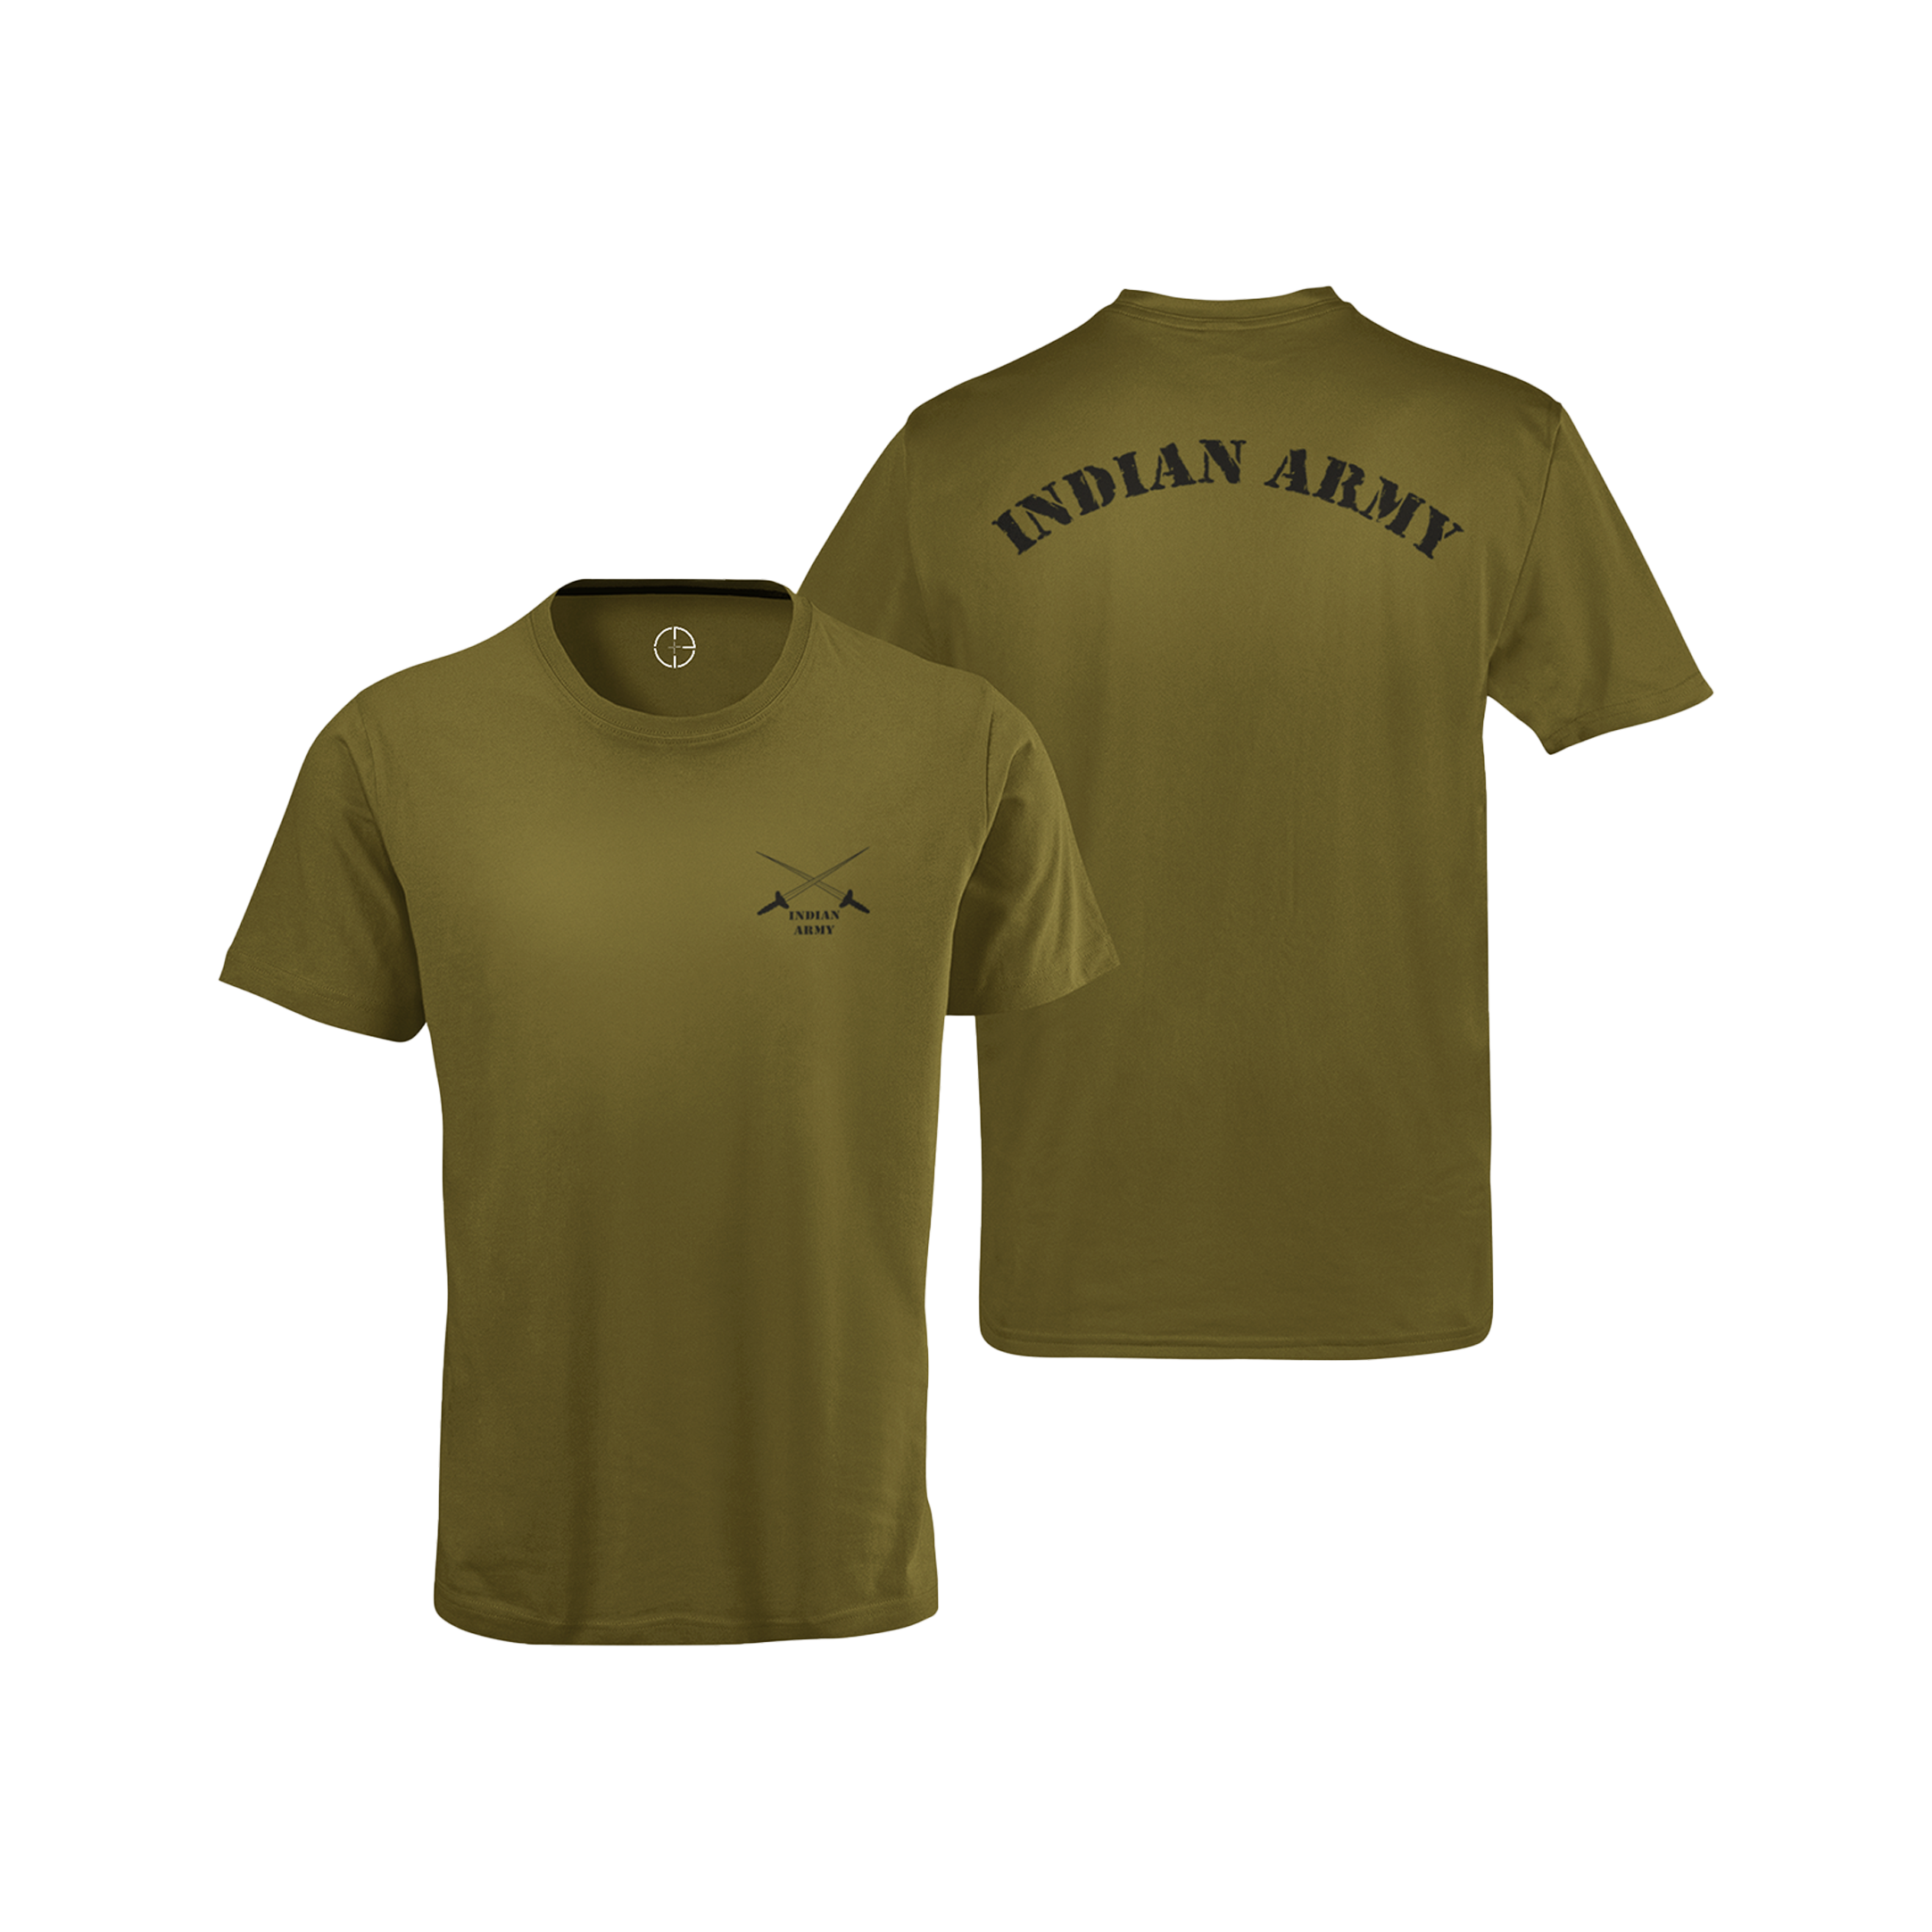 Wholesale Men's T-Shirt 100% Cotton - 2 Colors